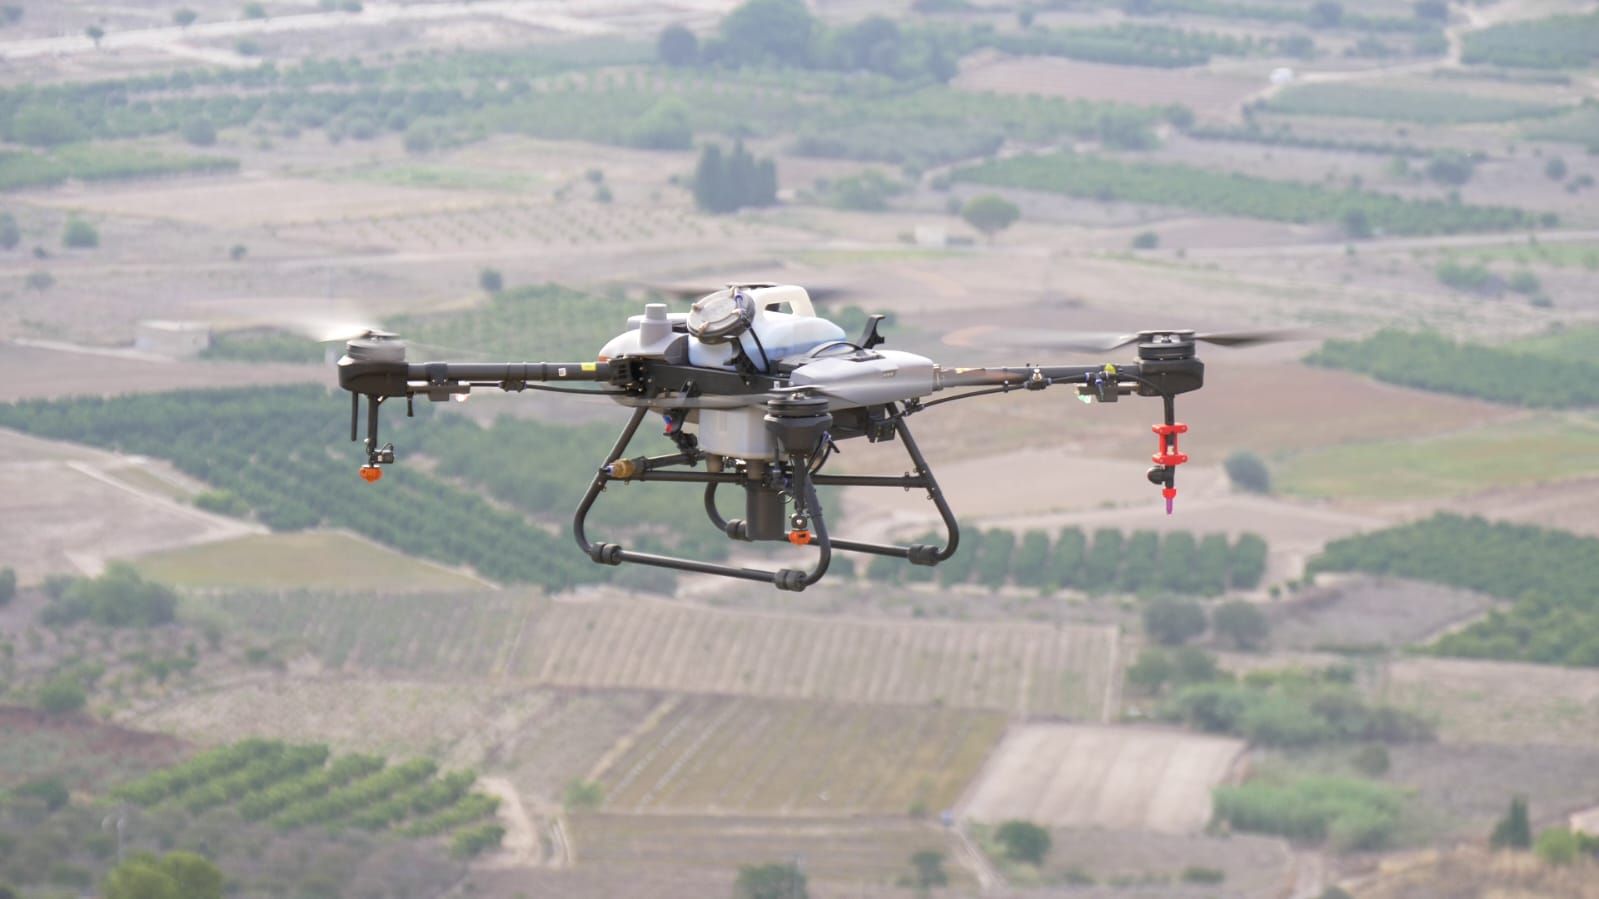 Llíria utiliza drones para erradicar un cactus invasor en el paraje de Sant Miquel